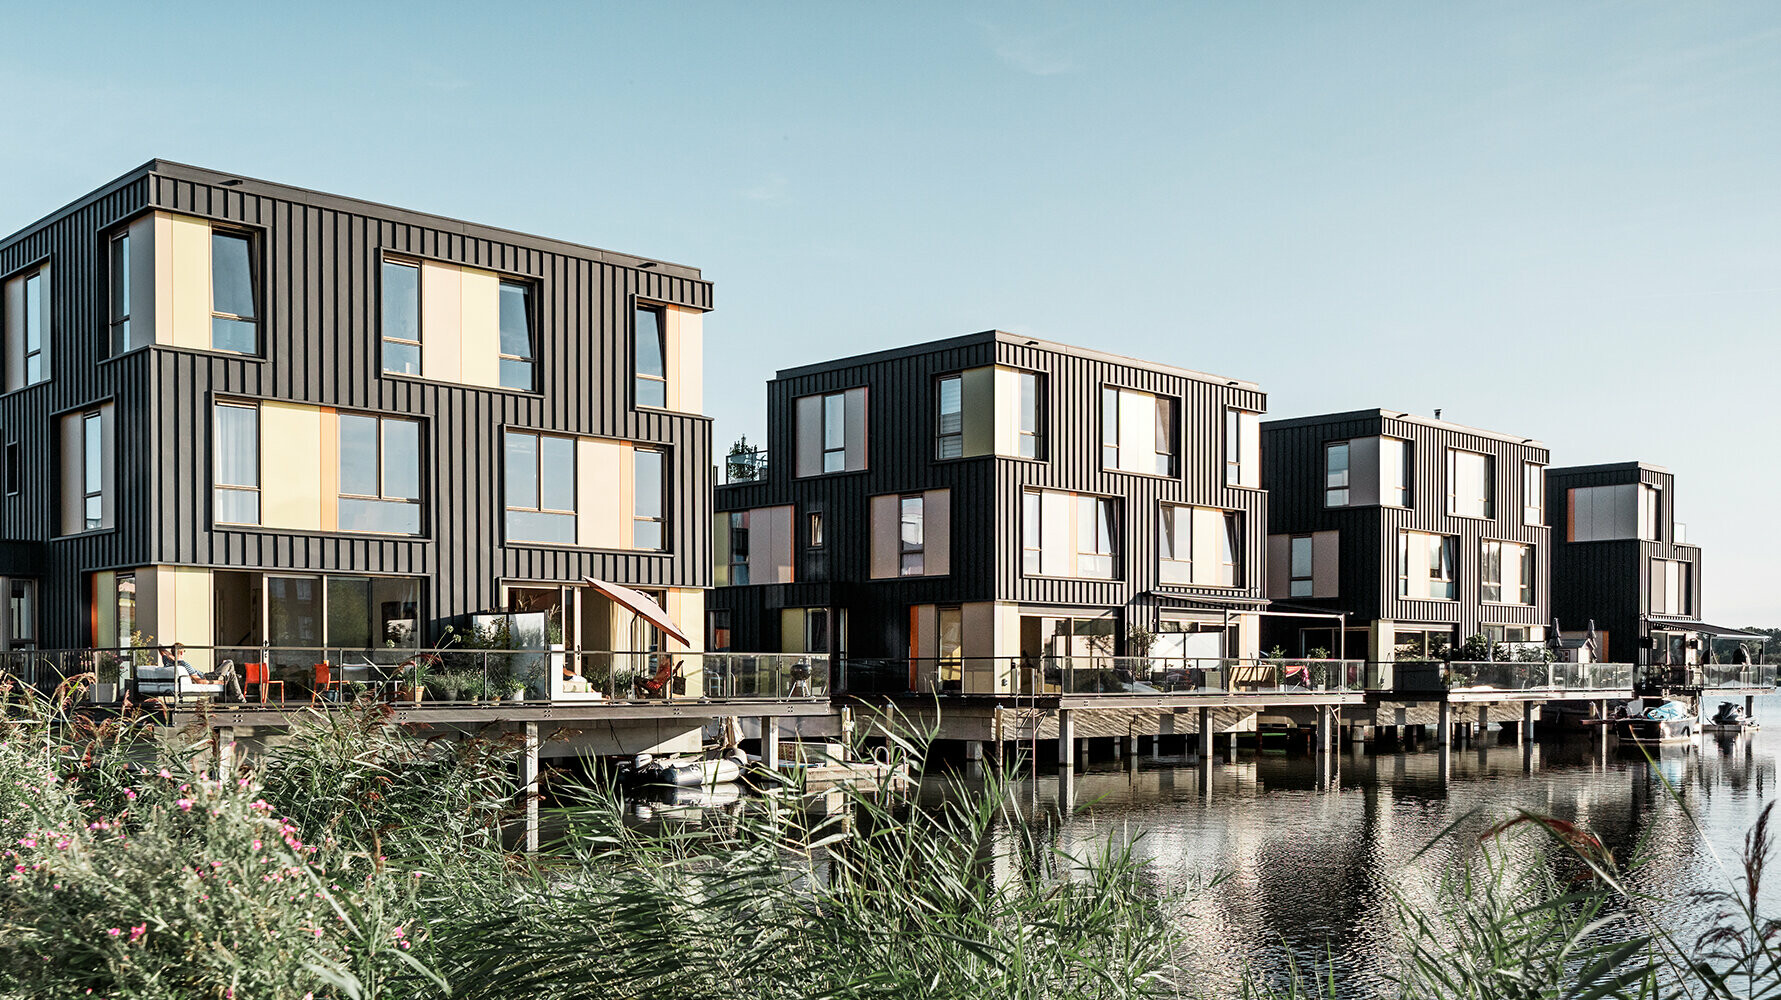 Wohnsiedlung in Amsterdam mit Wohnhäusern mit anthrazitfarbener Prefalz-Fassade